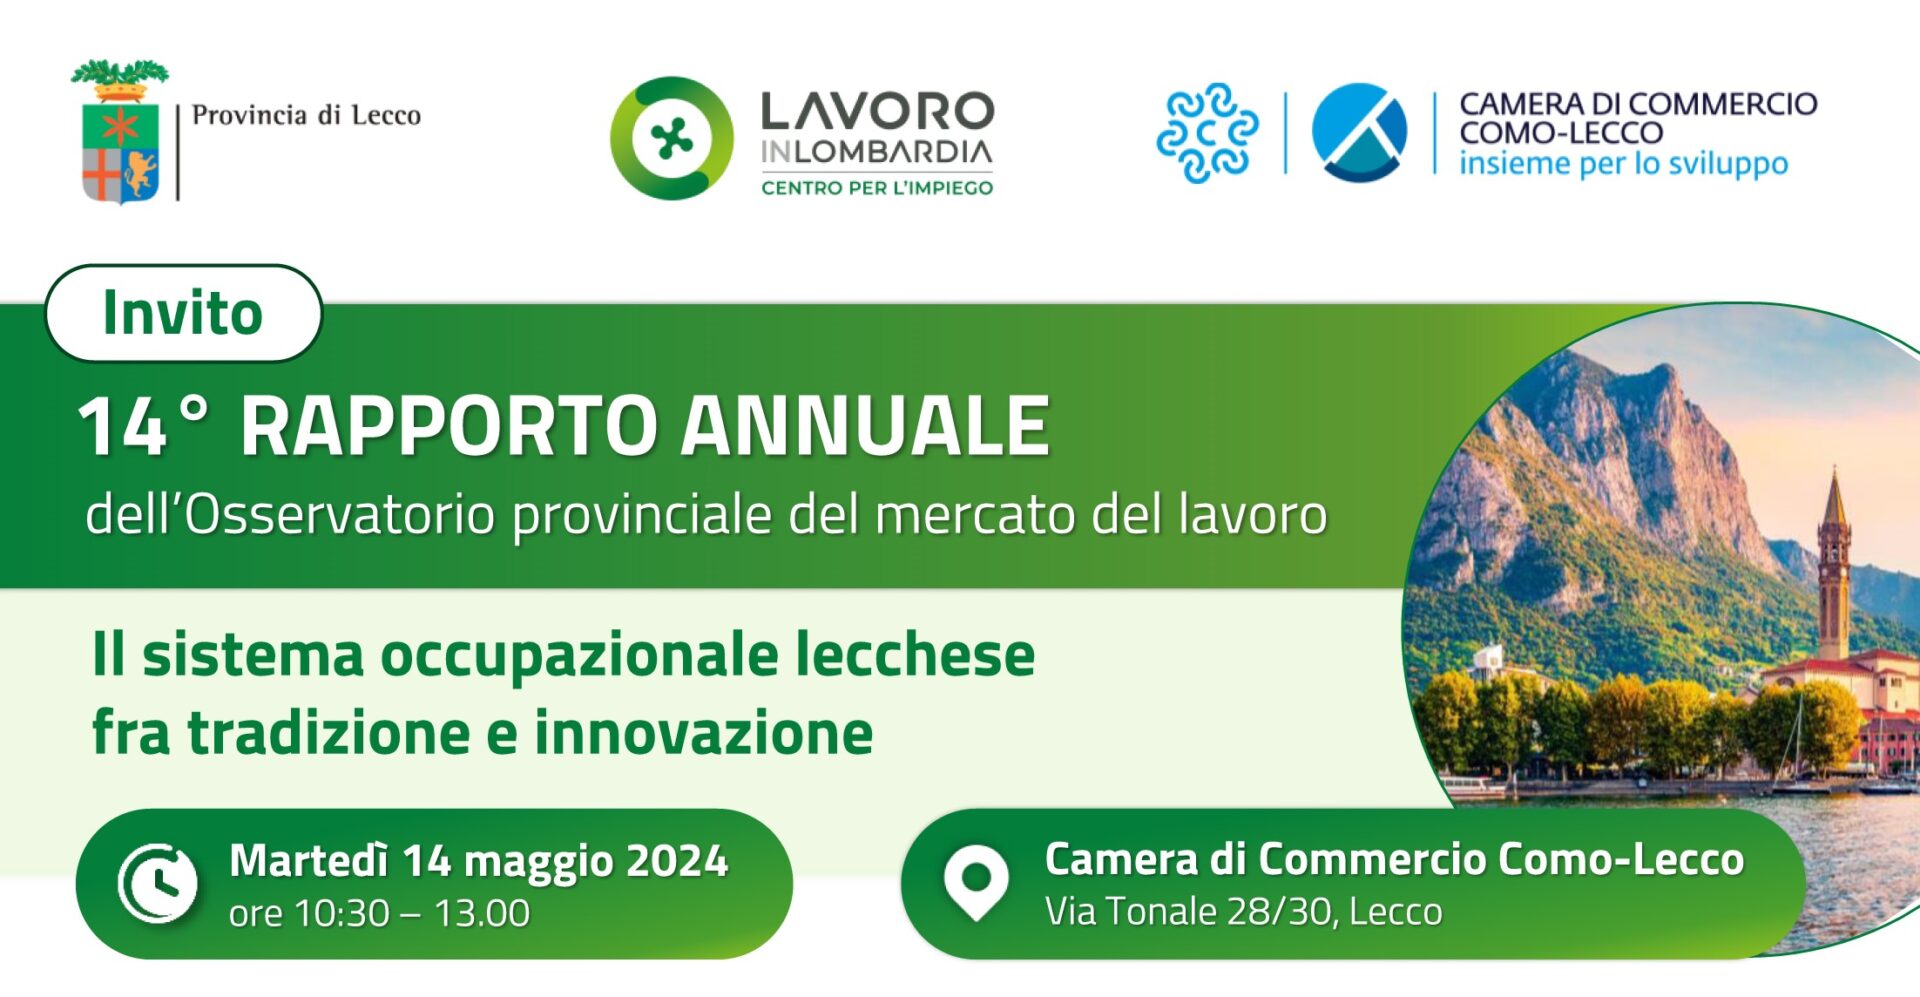 Martedì 14 maggio dalle 10.30 alle 13.00 in Camera di Commercio di Como-Lecco.